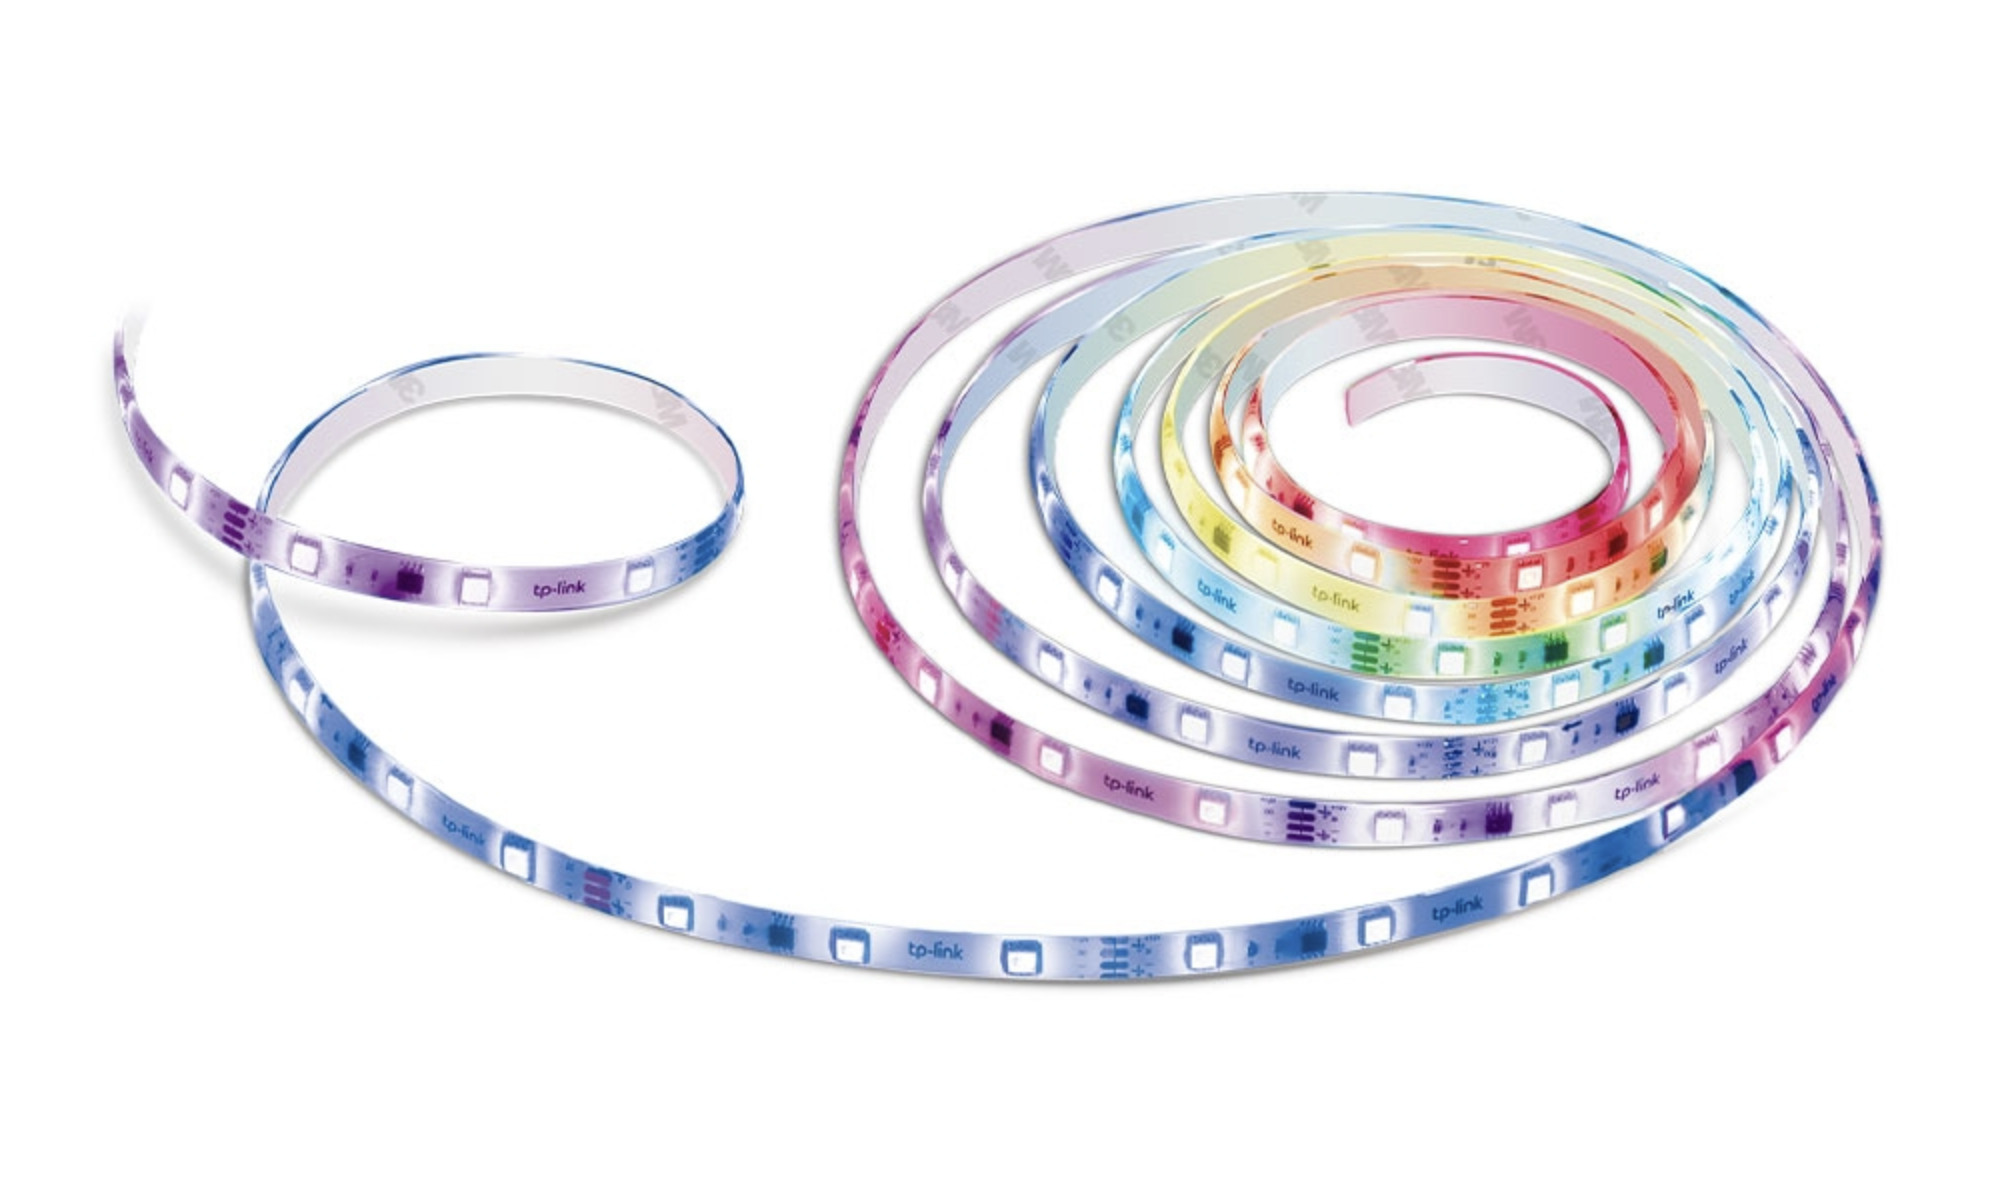 Le ruban LED connecté permet de définir 50 zones différentes de couleurs // Source : Tapo